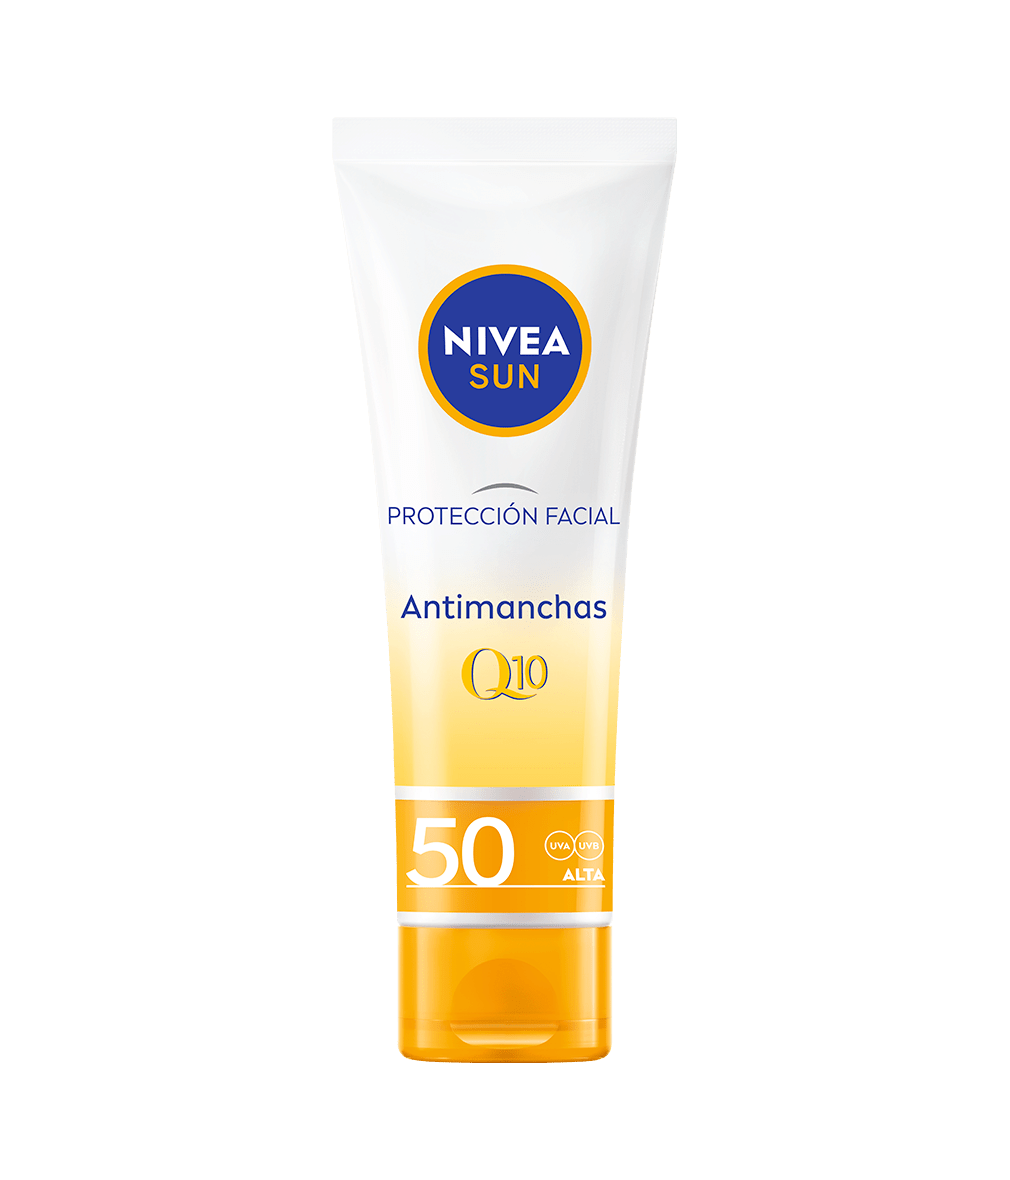 NIVEA SUN Protección Facial Q10 Antimanchas FP 50